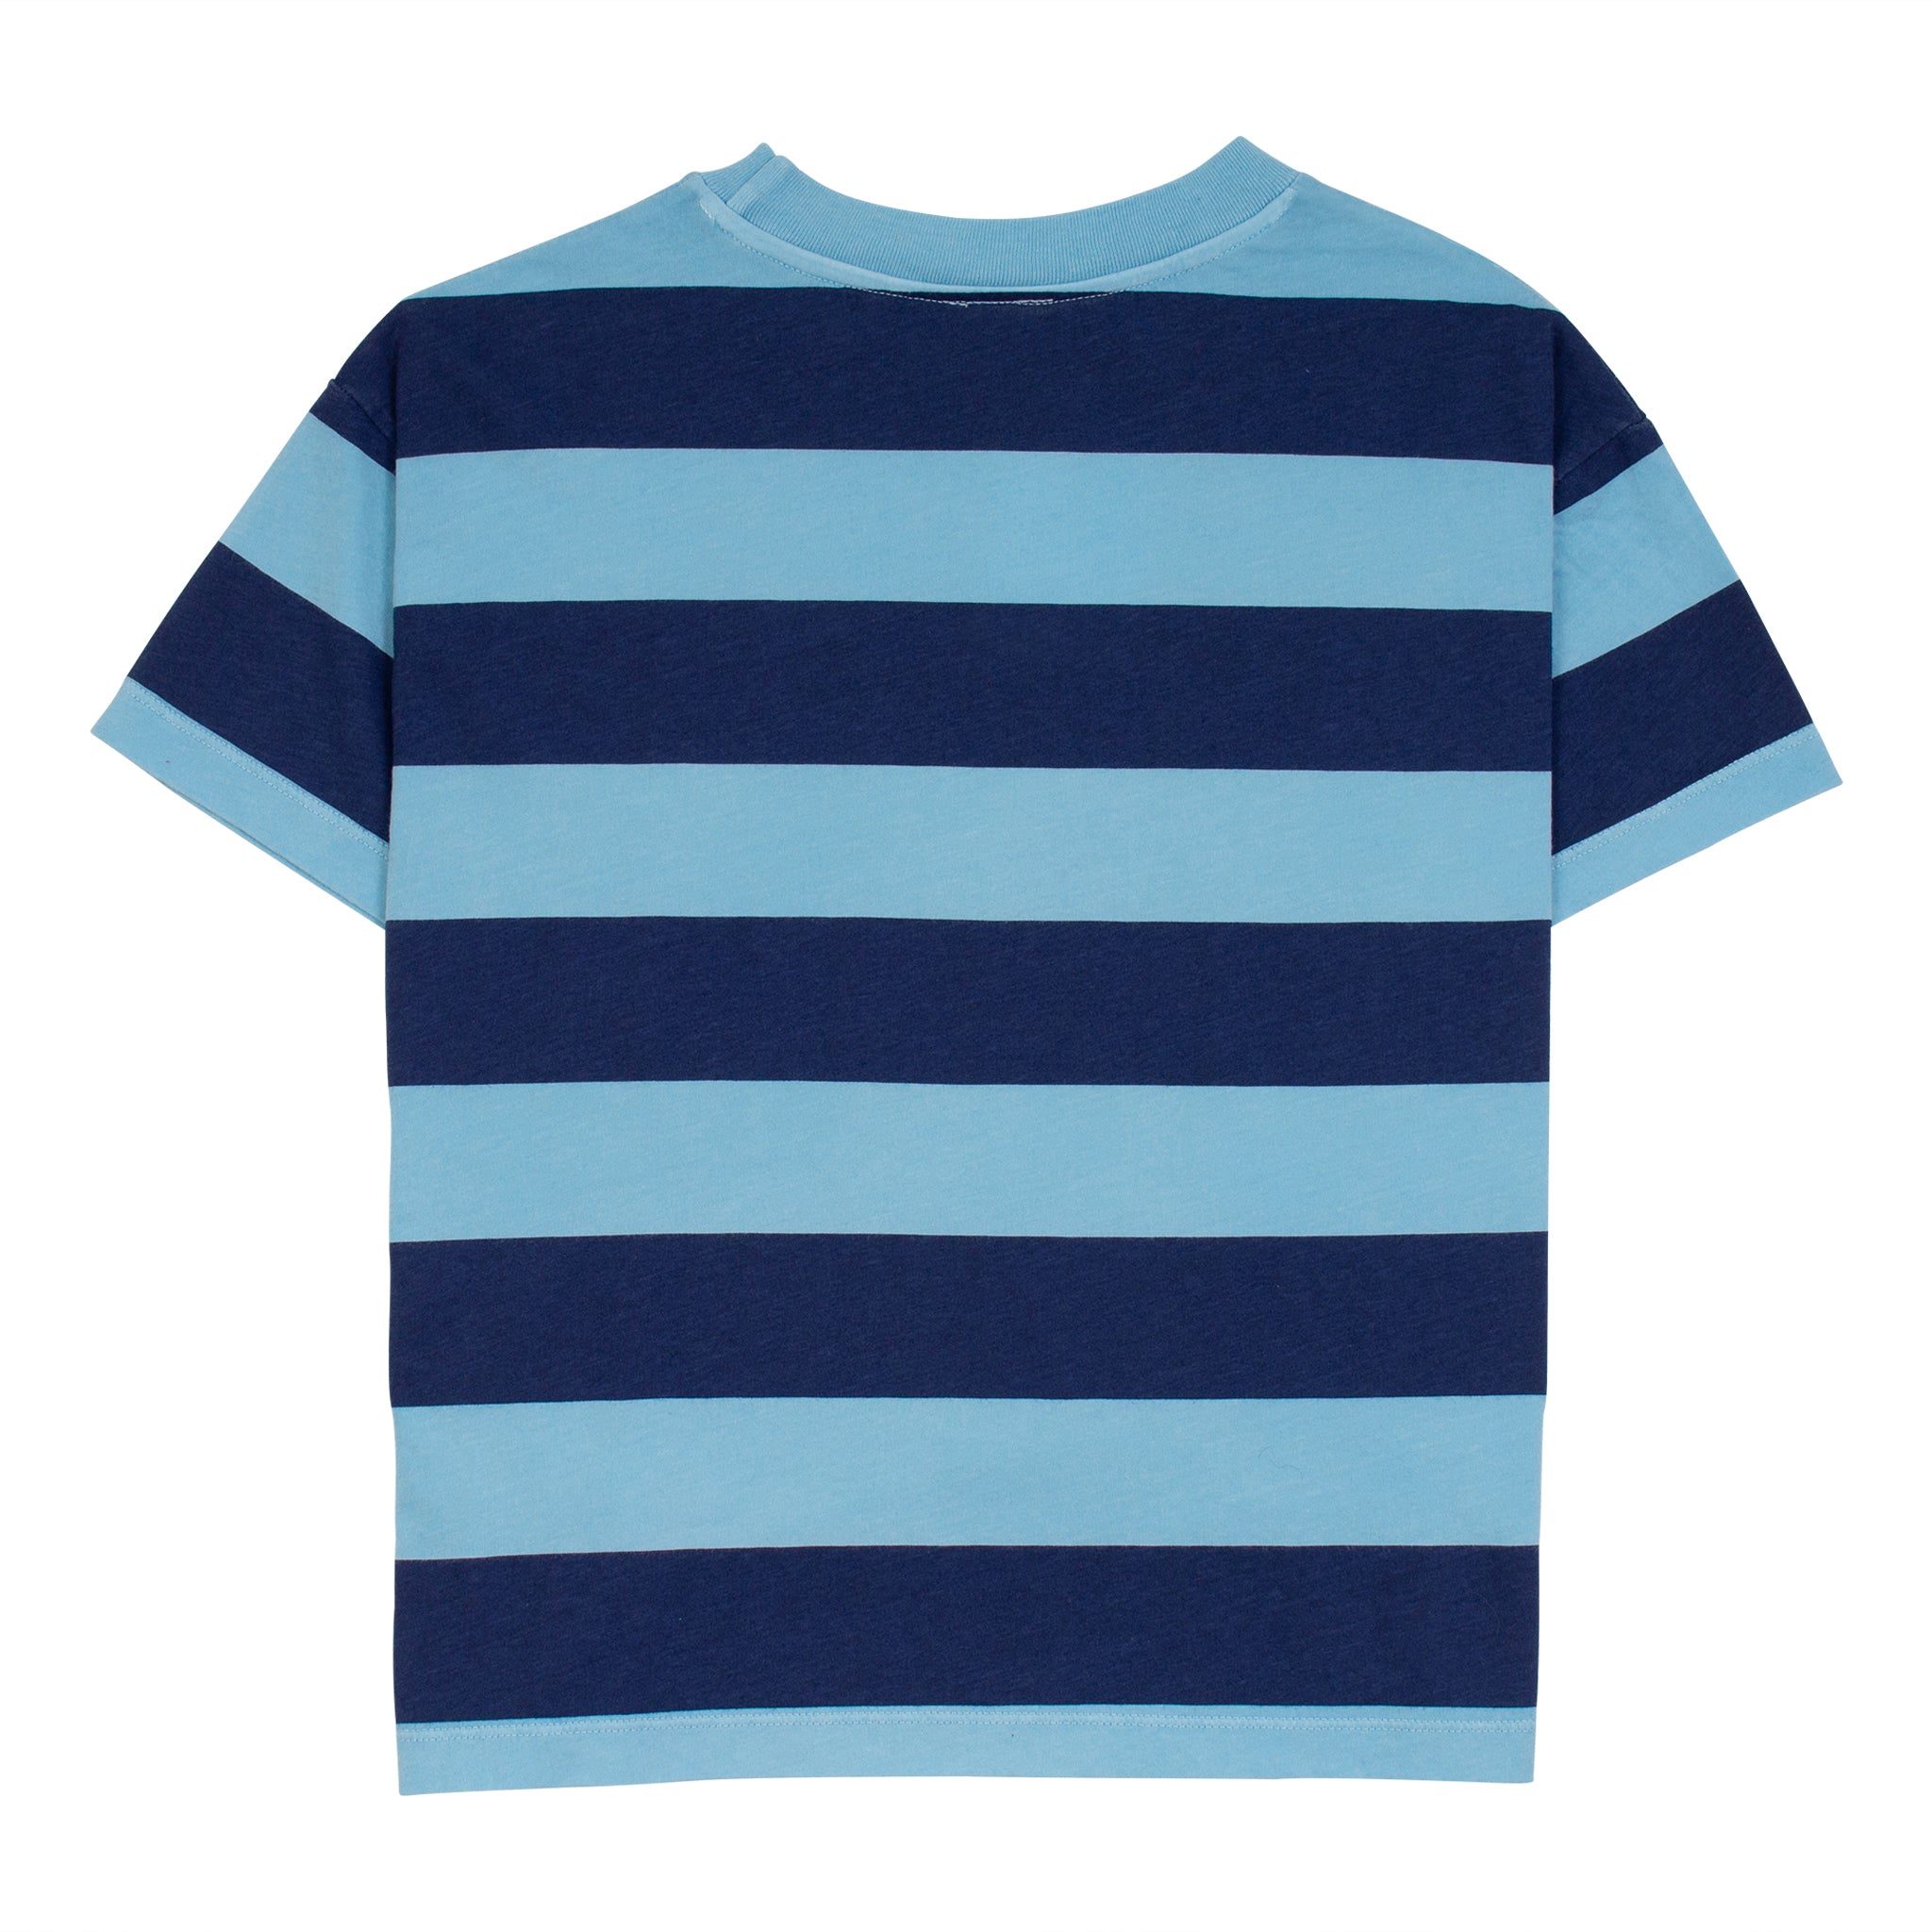 Wynken Turquoise Wide Stripe T-Shirt